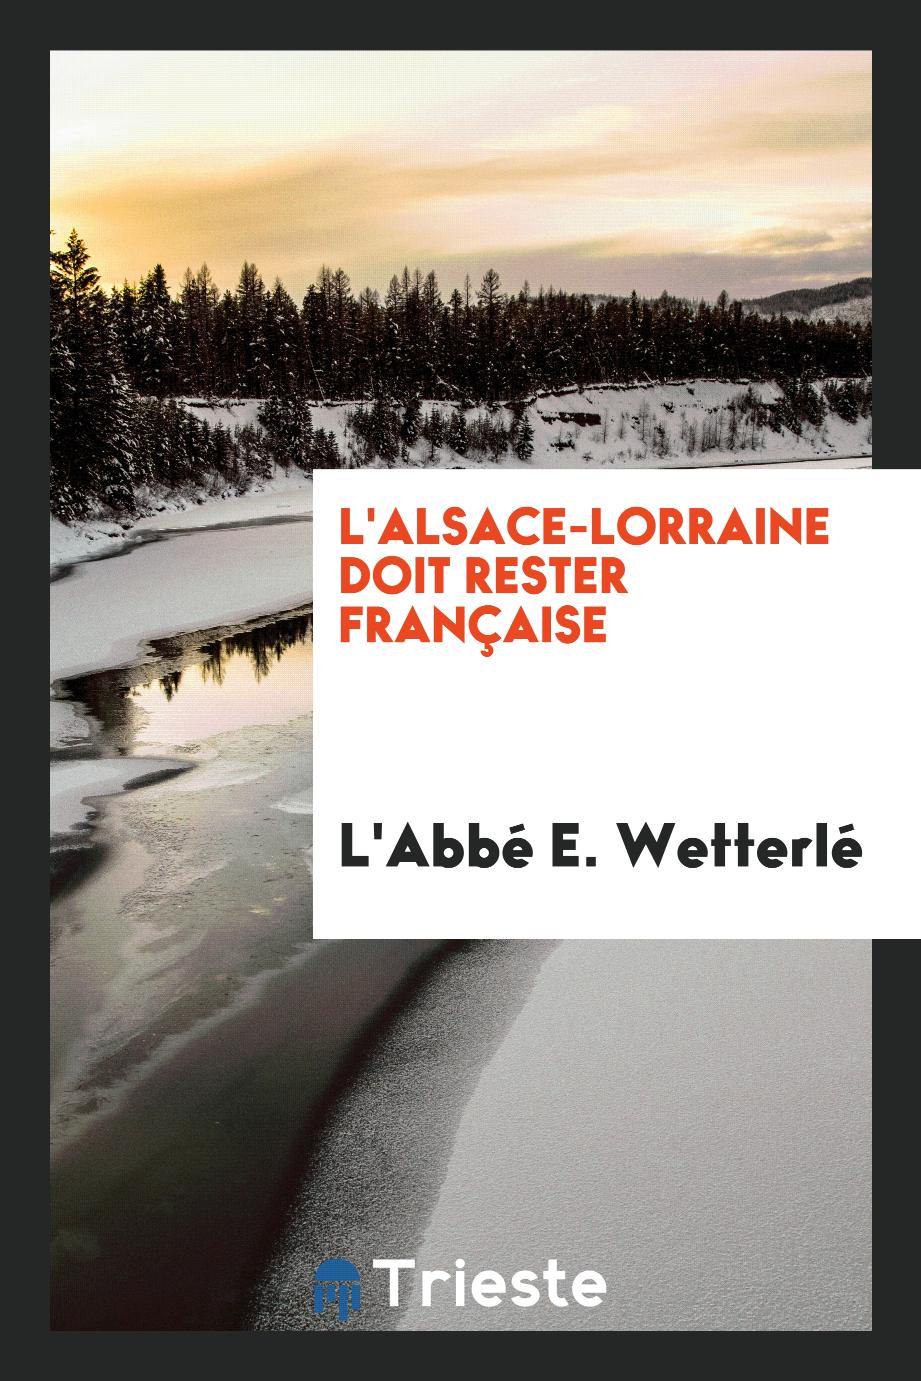 L'Alsace-Lorraine doit rester Française